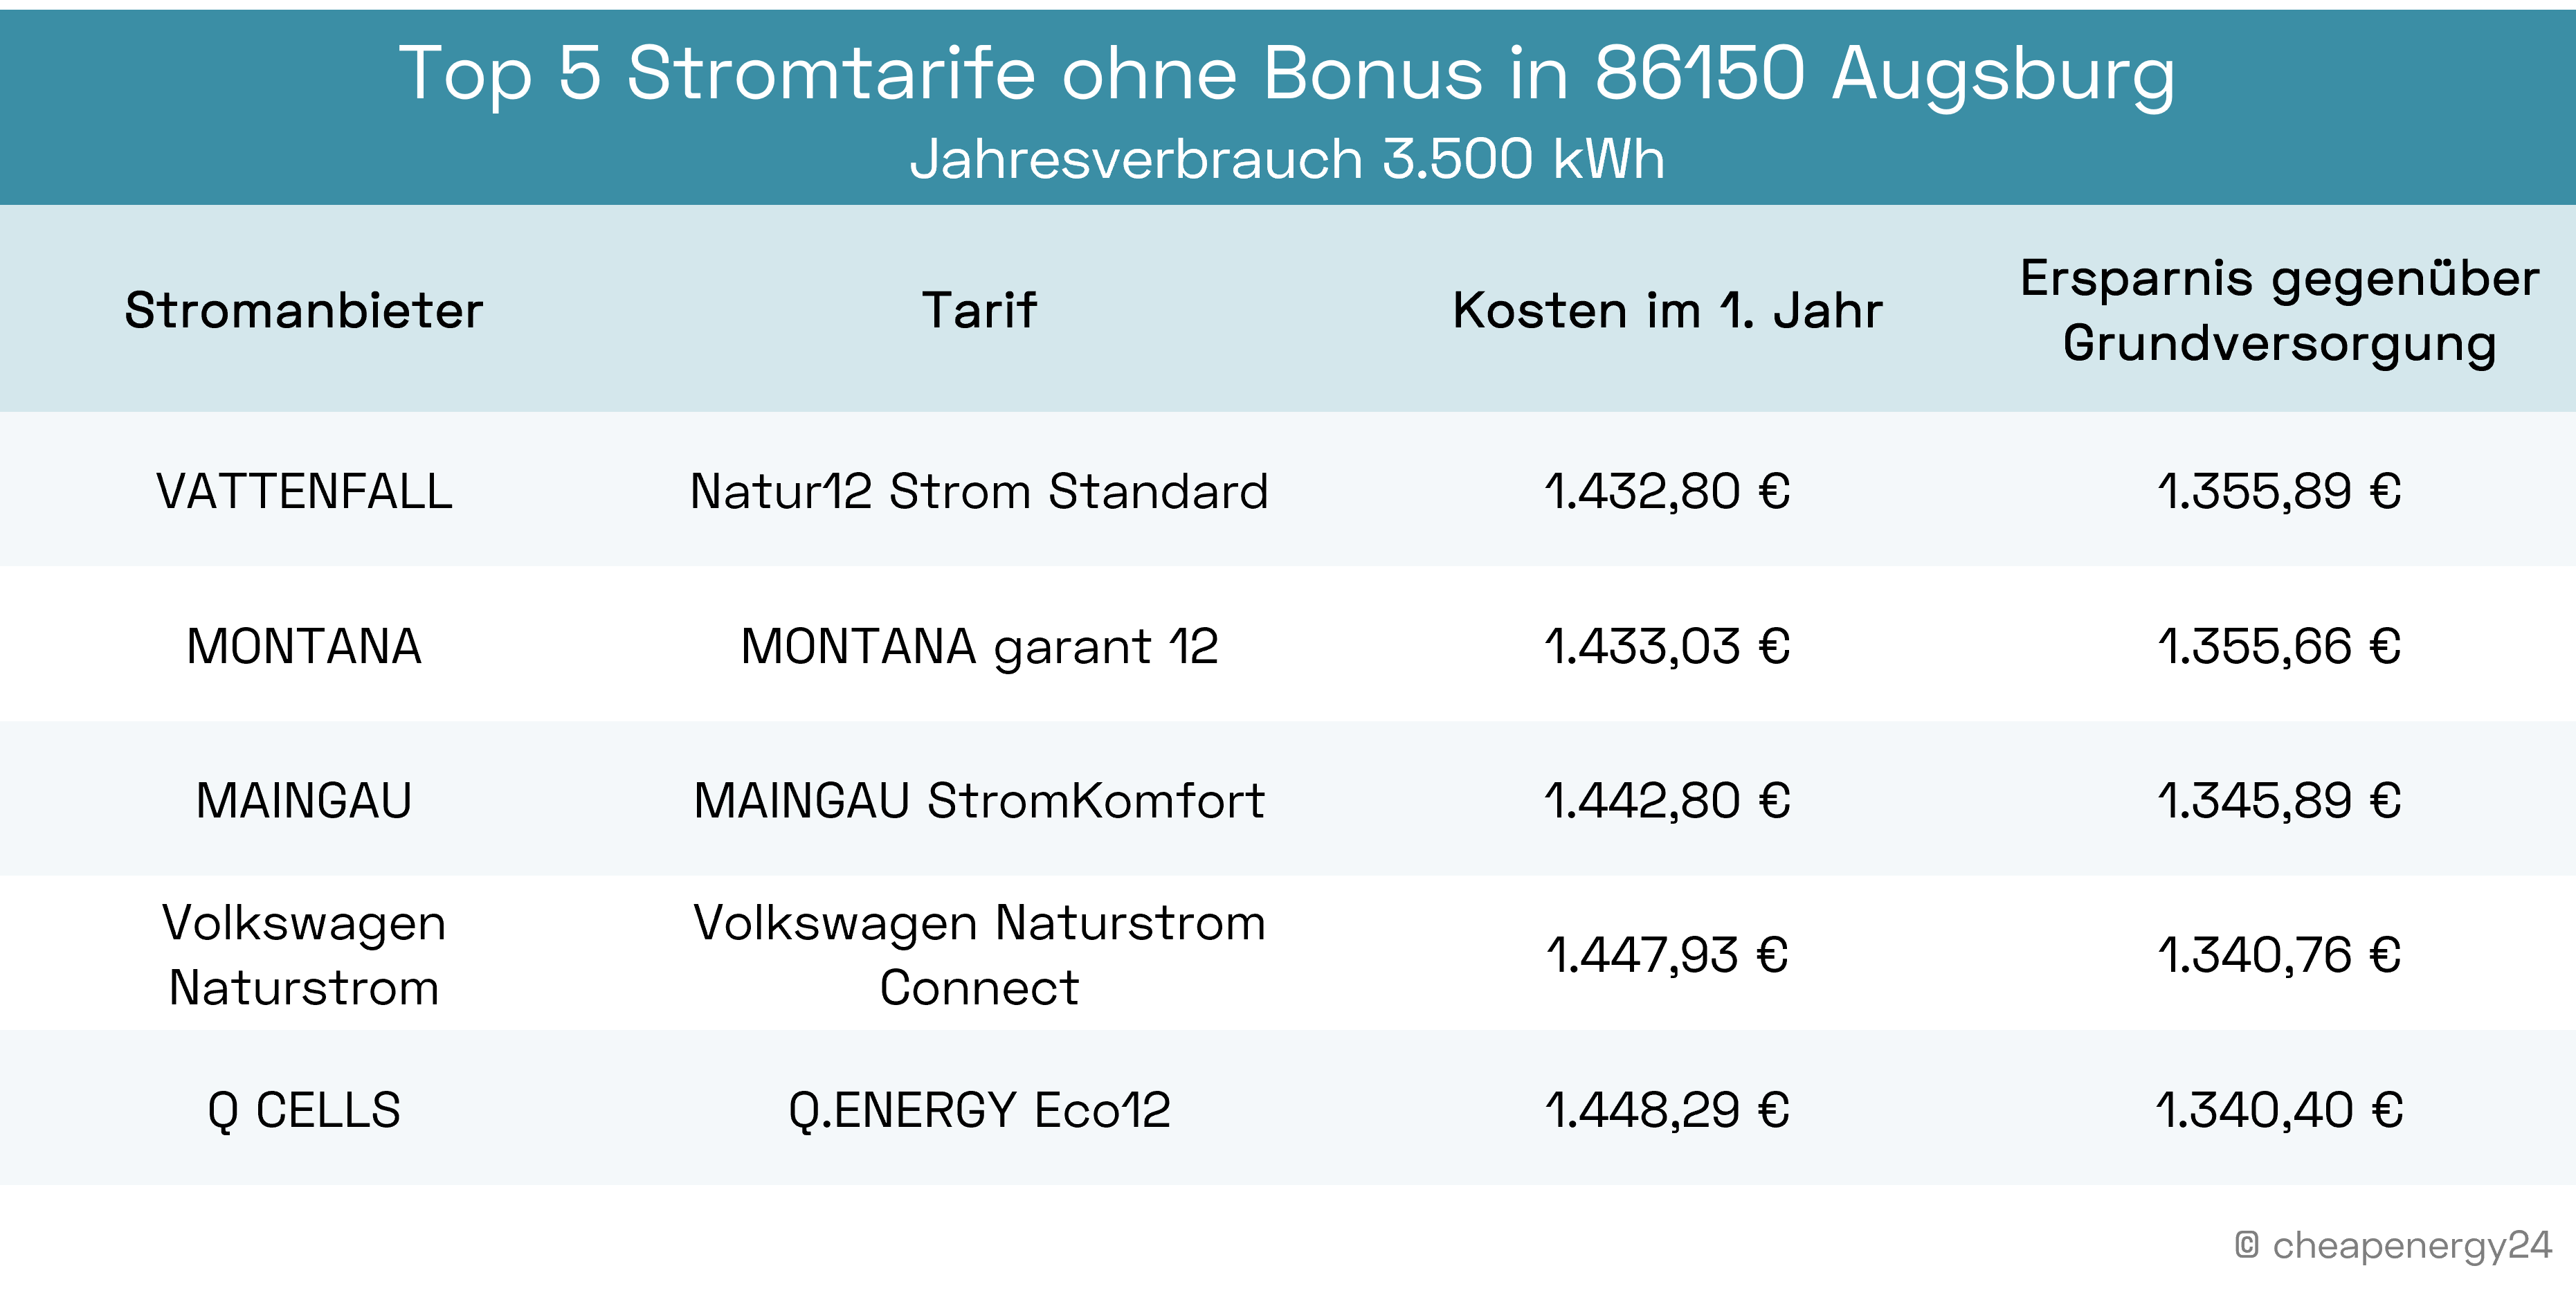 Die besten Stromtarife ohne Bonus in Augsburg